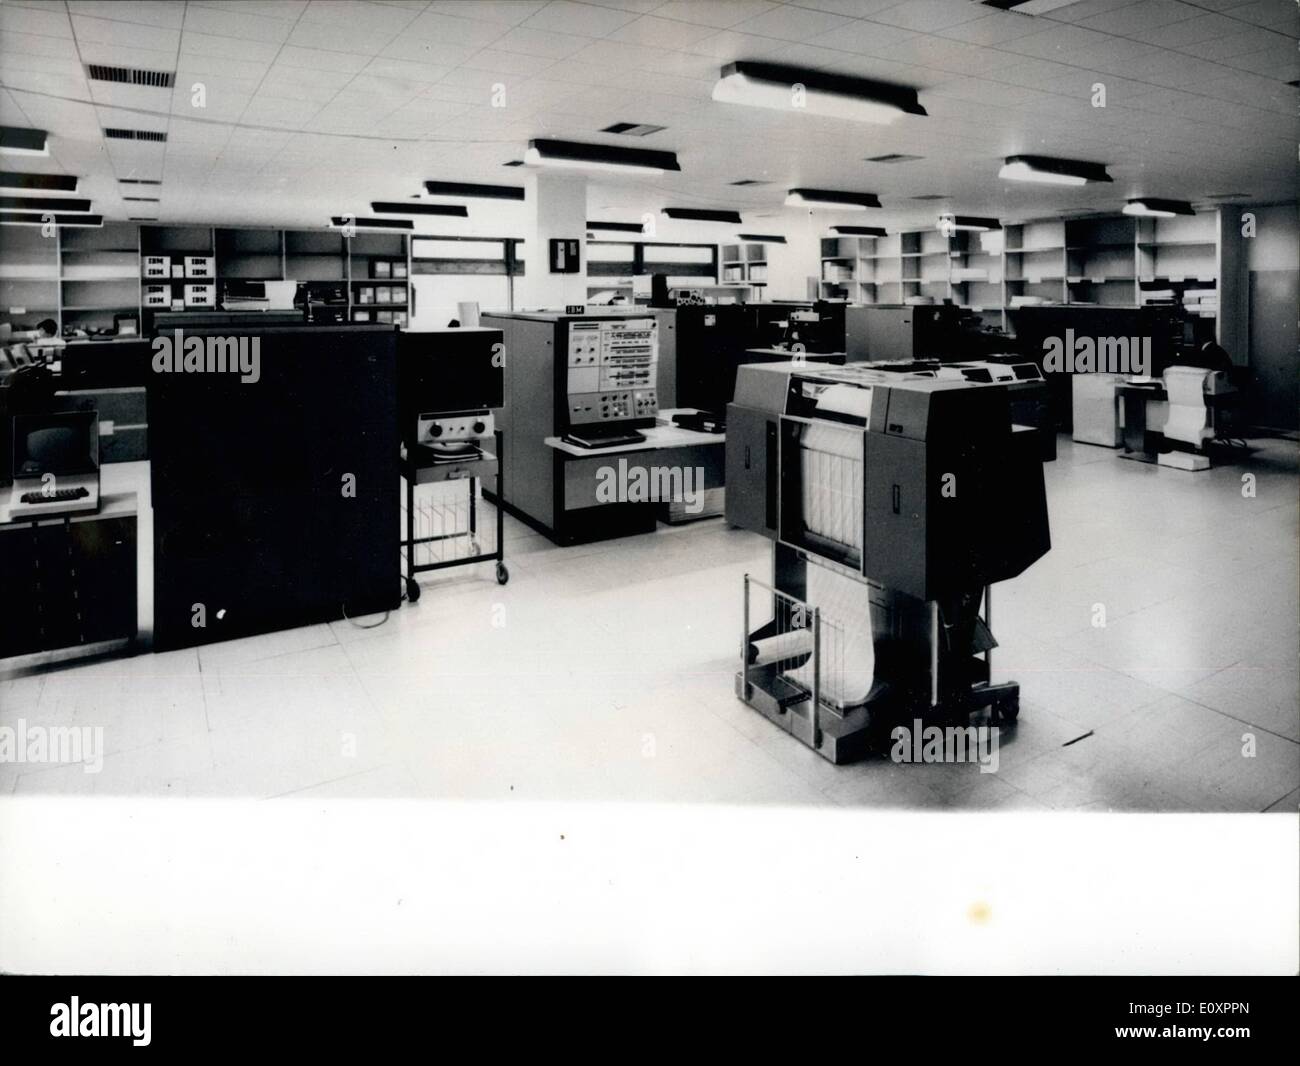 10 octobre 1967 Jeux Olympiques d'hiver 1967 - Grenoble : Le centre IBM où les résultats seront évalués. Banque D'Images